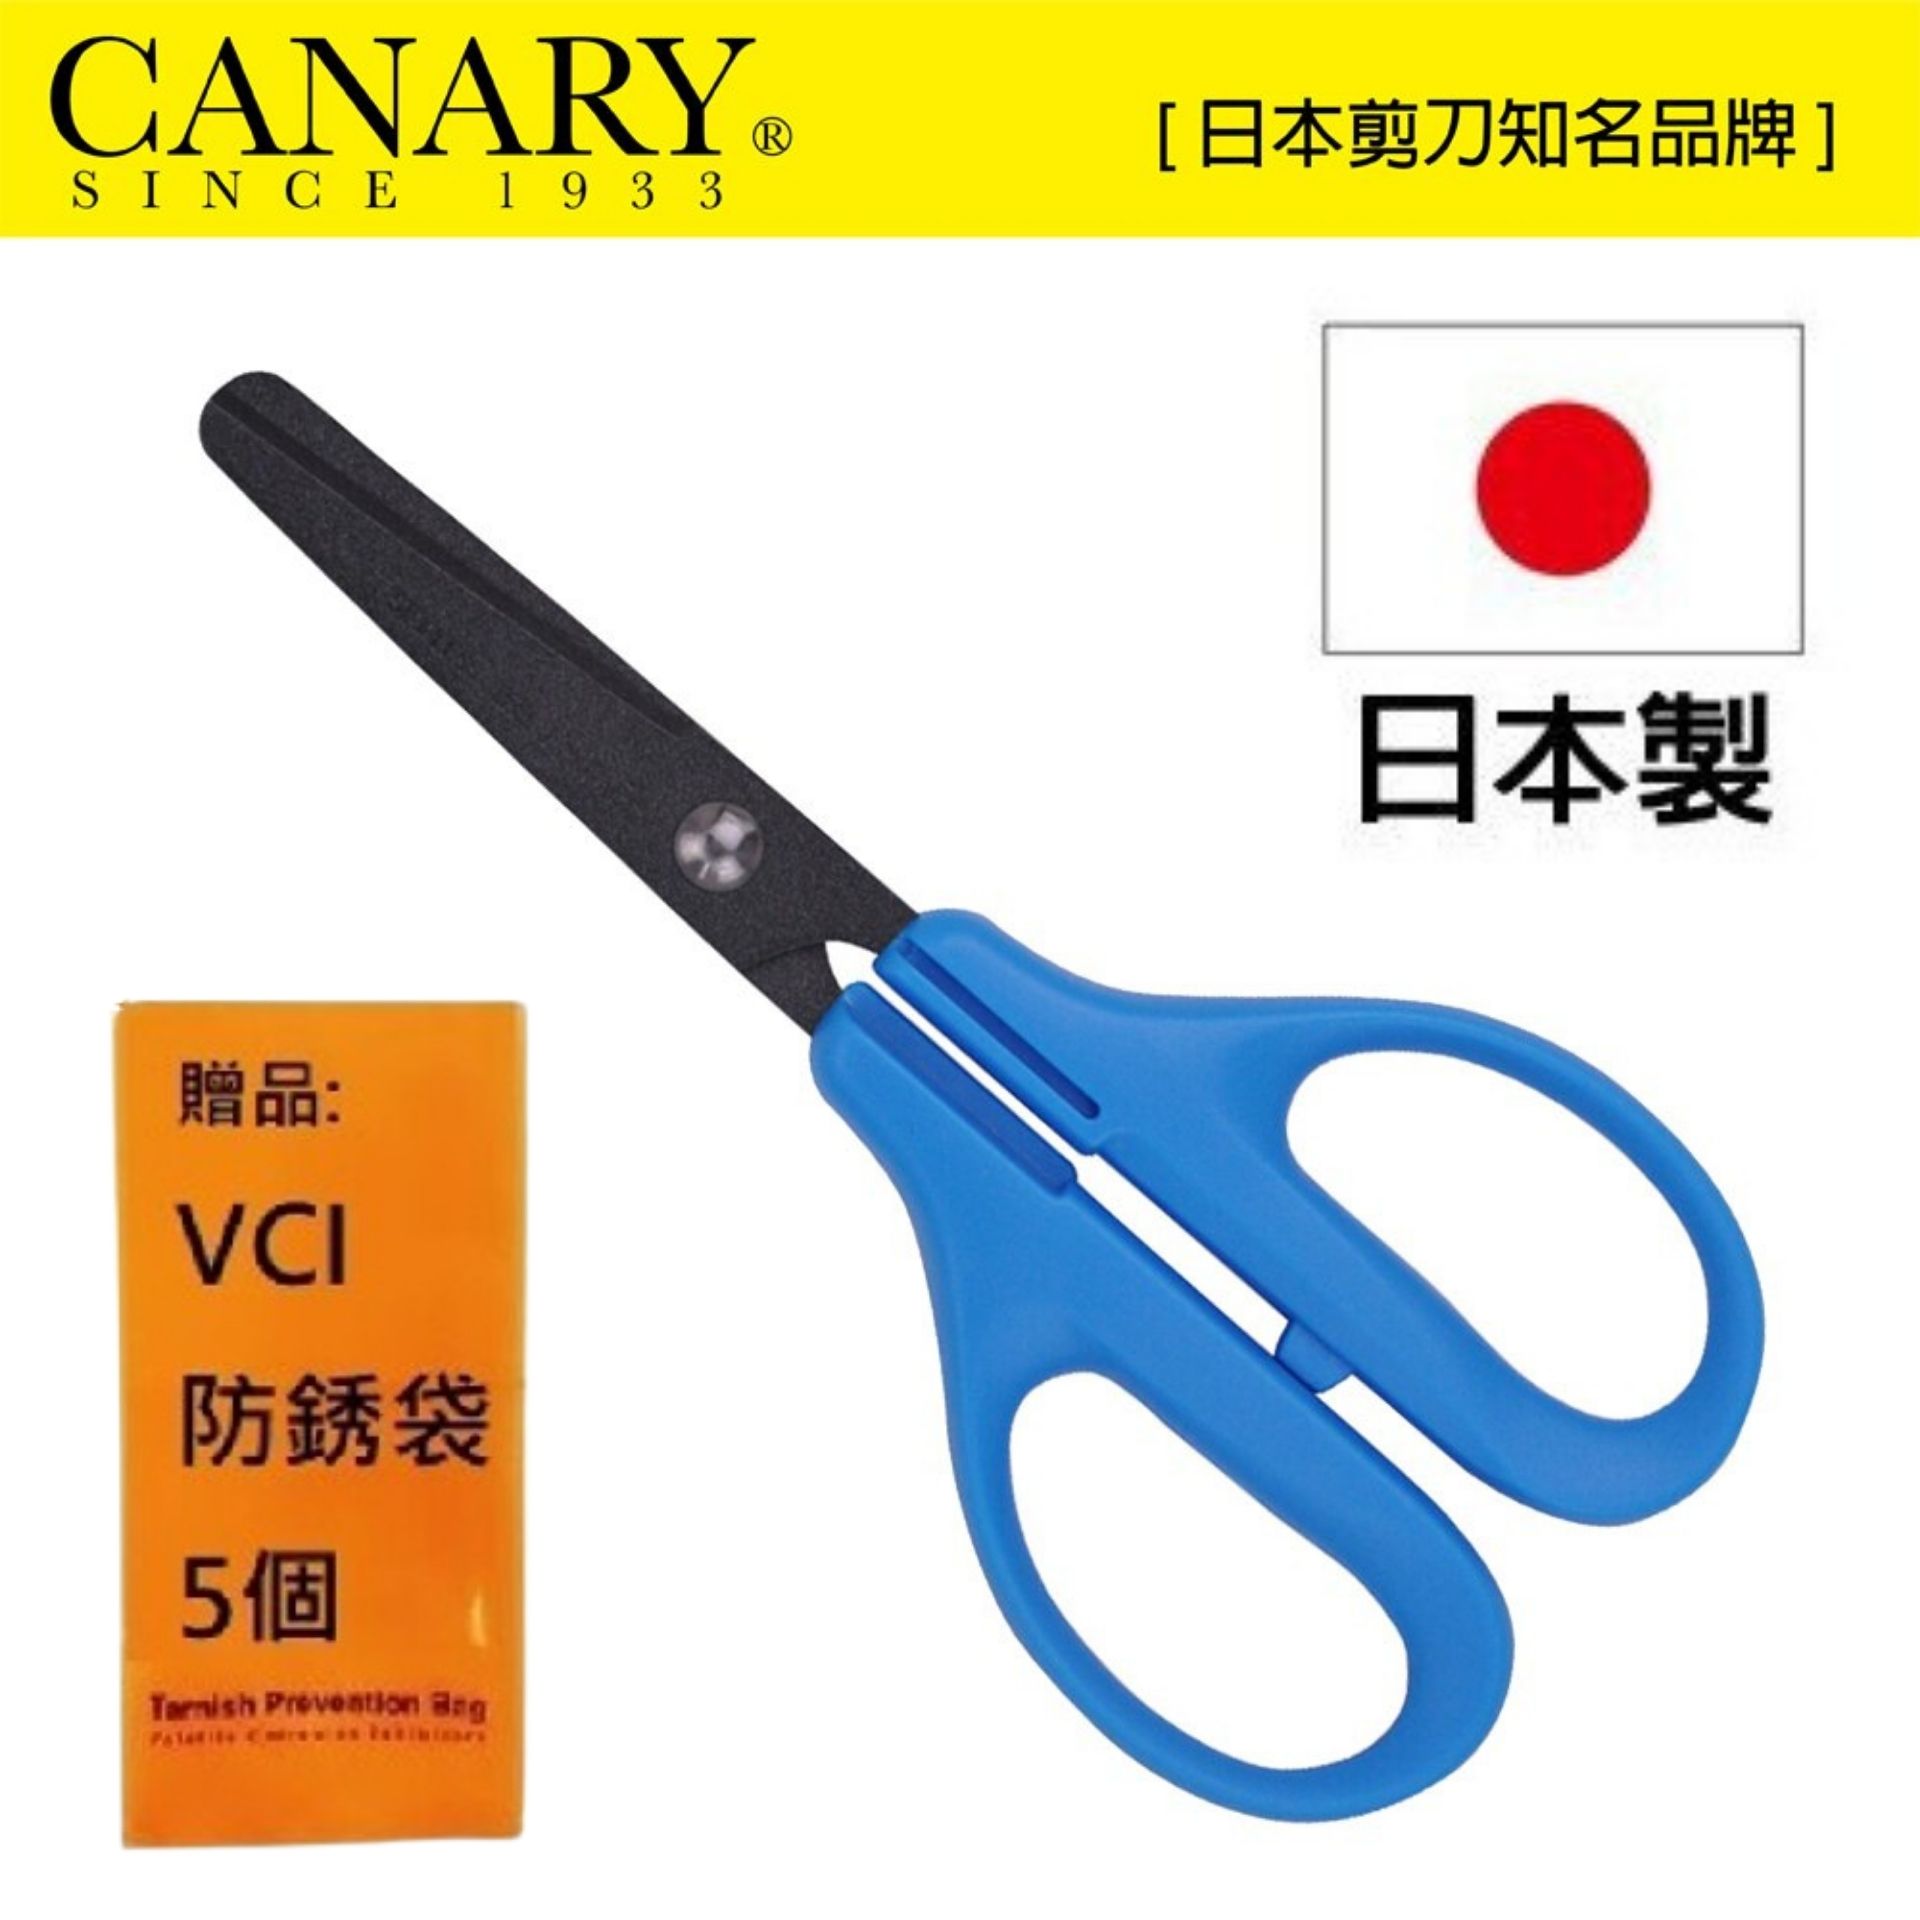 【日本CANARY】兒童不粘膠剪刀 150mm 可以將手柄和刀片分開進行處理的環保剪刀